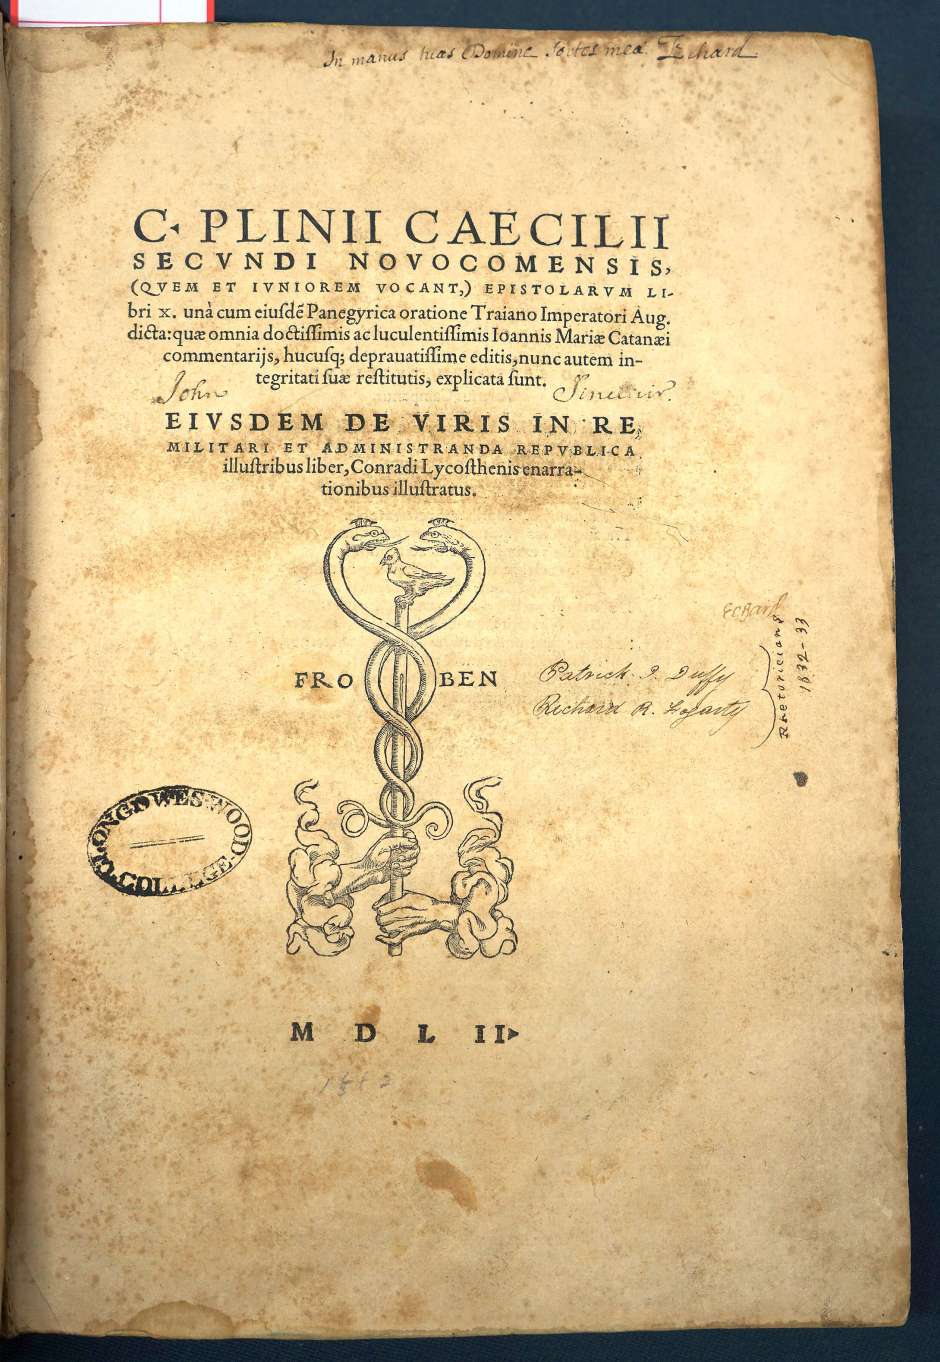 Lot 1171, Auction  115, Plinius Caecilius Secundus, Gaius, Epistolarum libri X